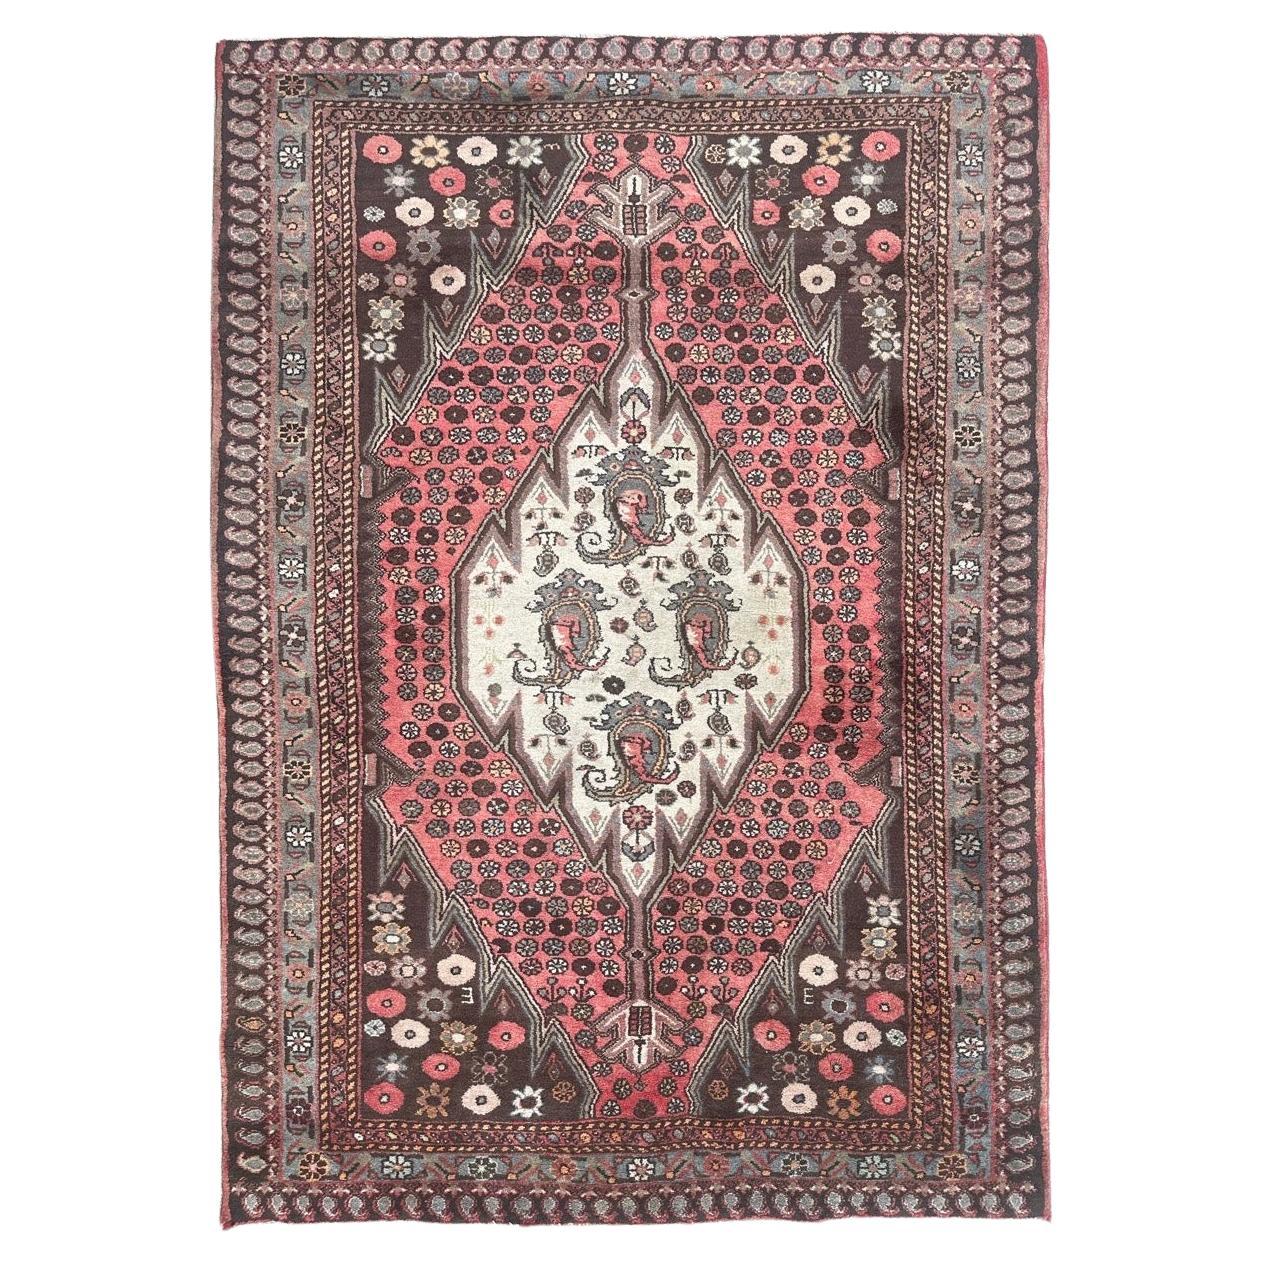  pretty vintage Hamadan rug